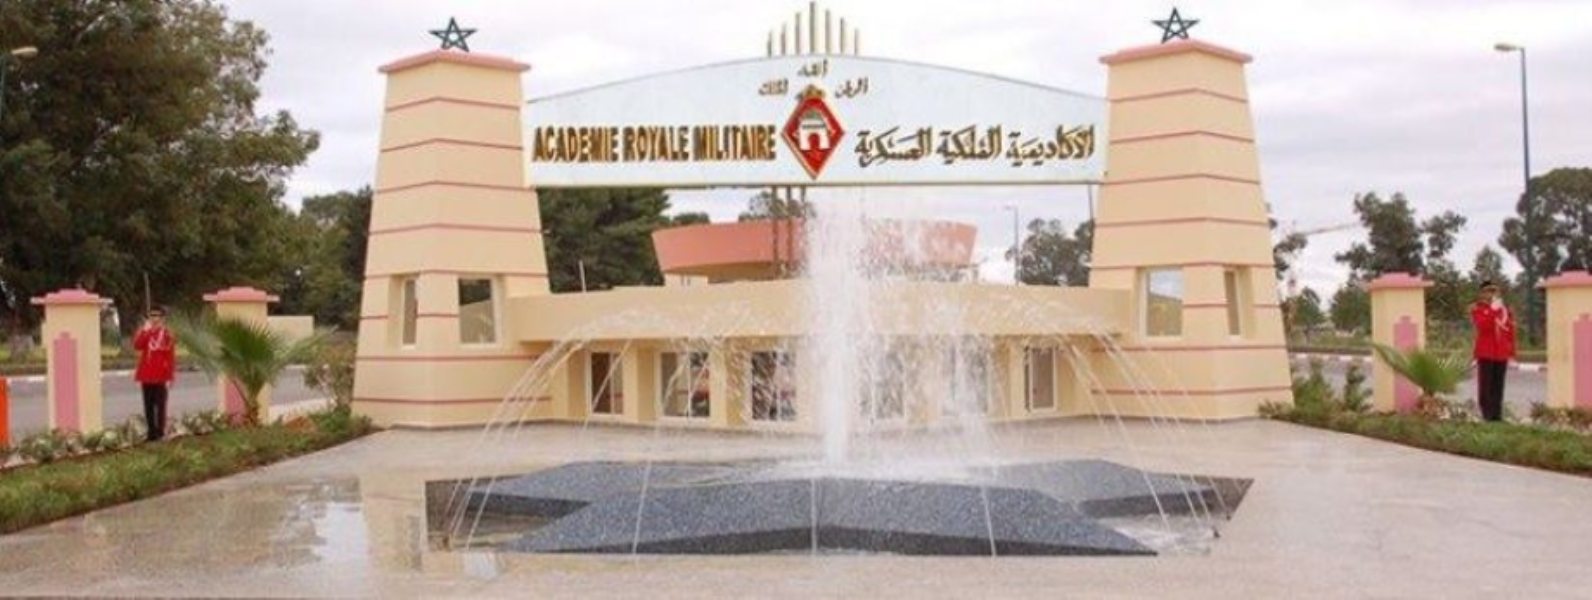 وفد من الأكاديمية الملكية العسكرية بمكناس يزور الأكاديمية العسكرية بأطار الموريتانية